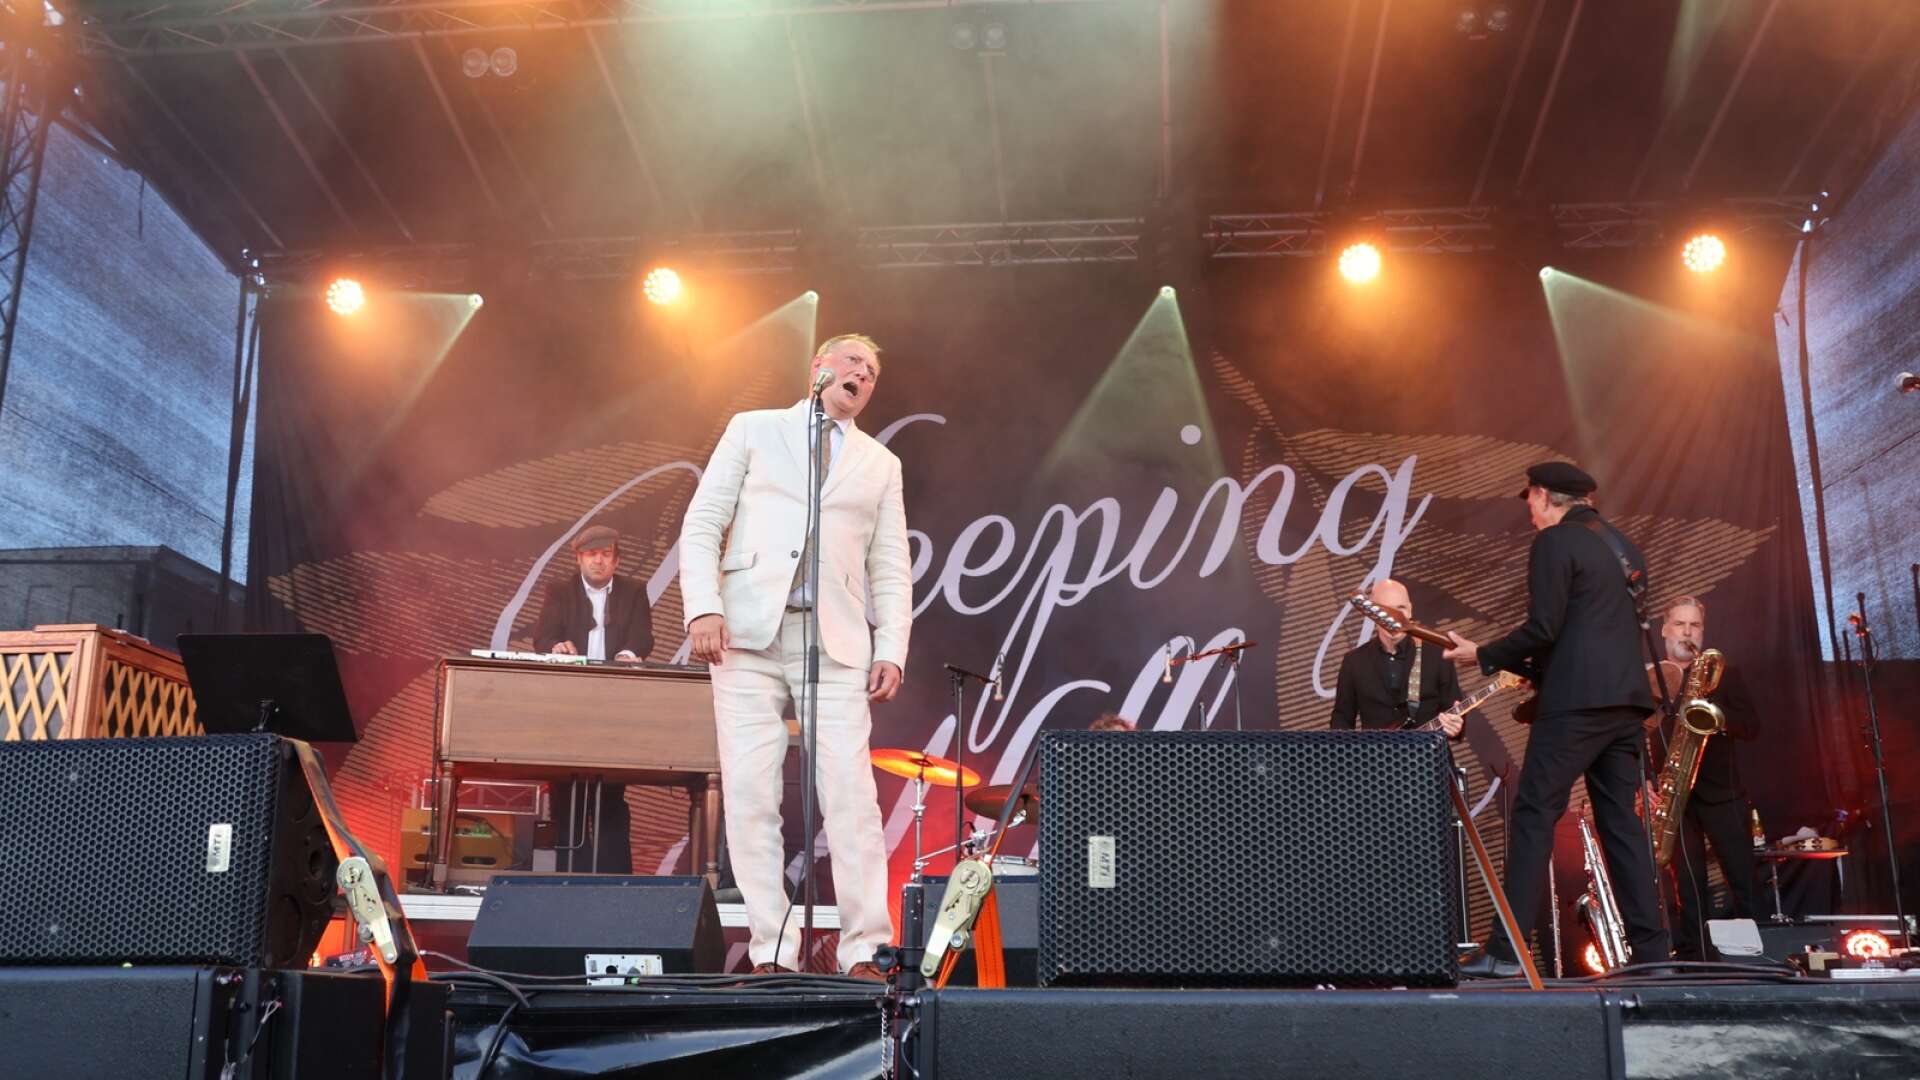 Sångaren Magnus Carlsson och bandet Weeping Willows gästade Countryfestivalen i Ed och bjöd på fantastisk underhållning.